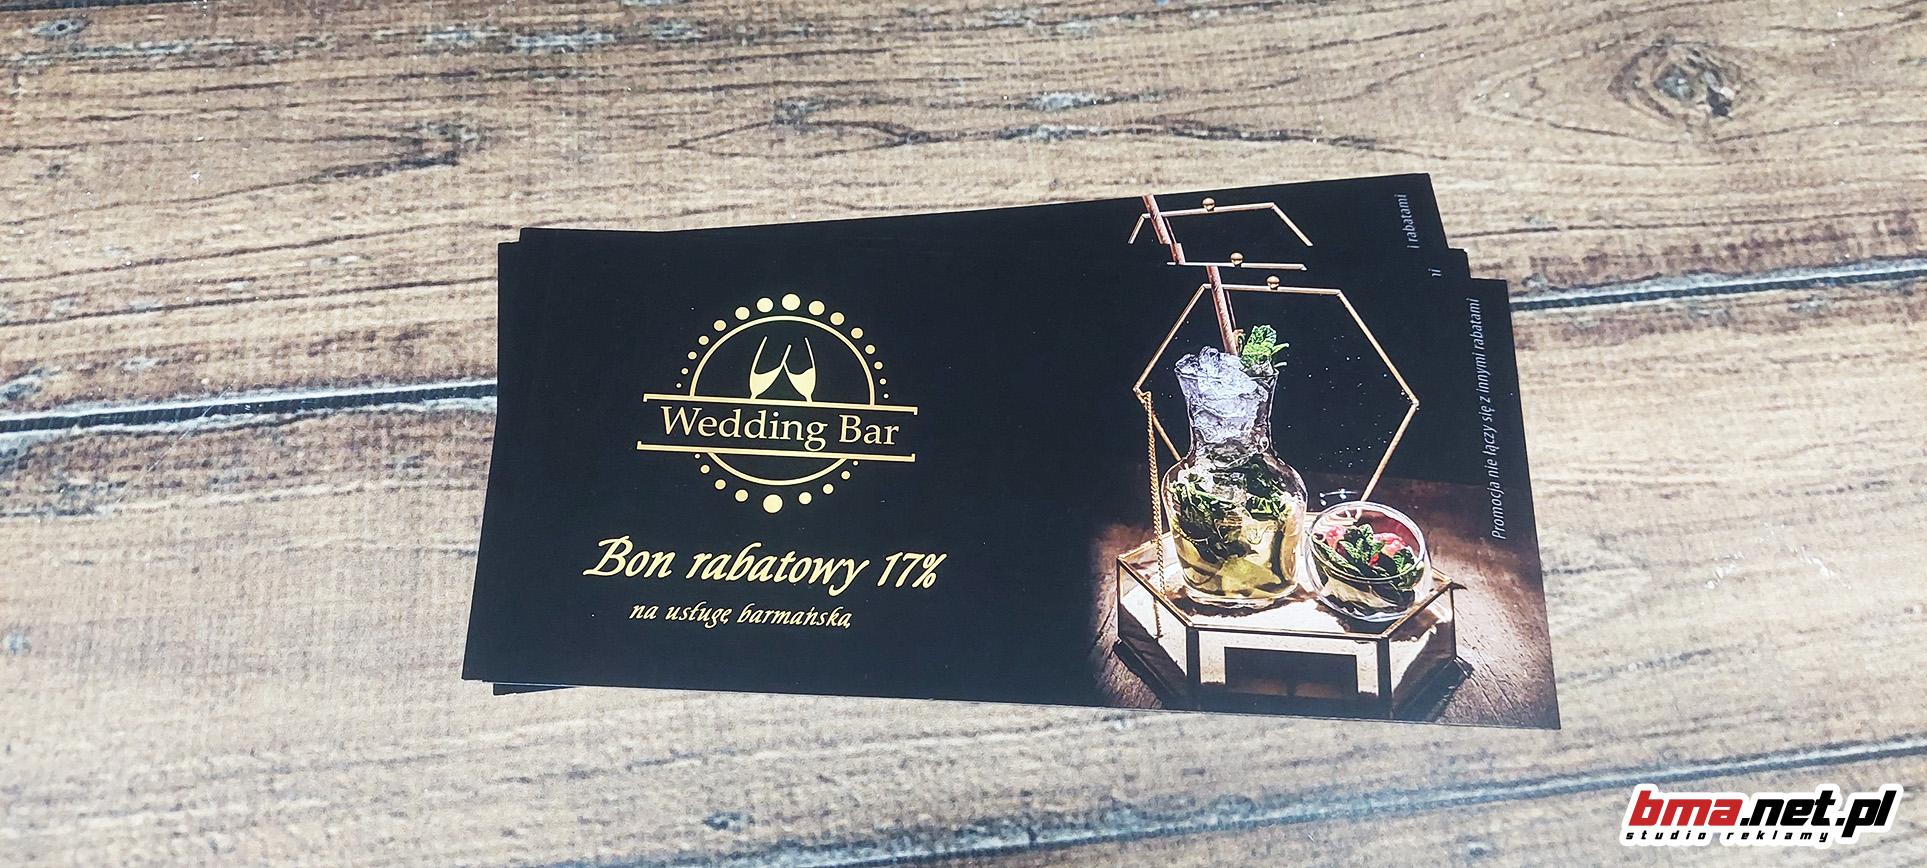 wedding bar